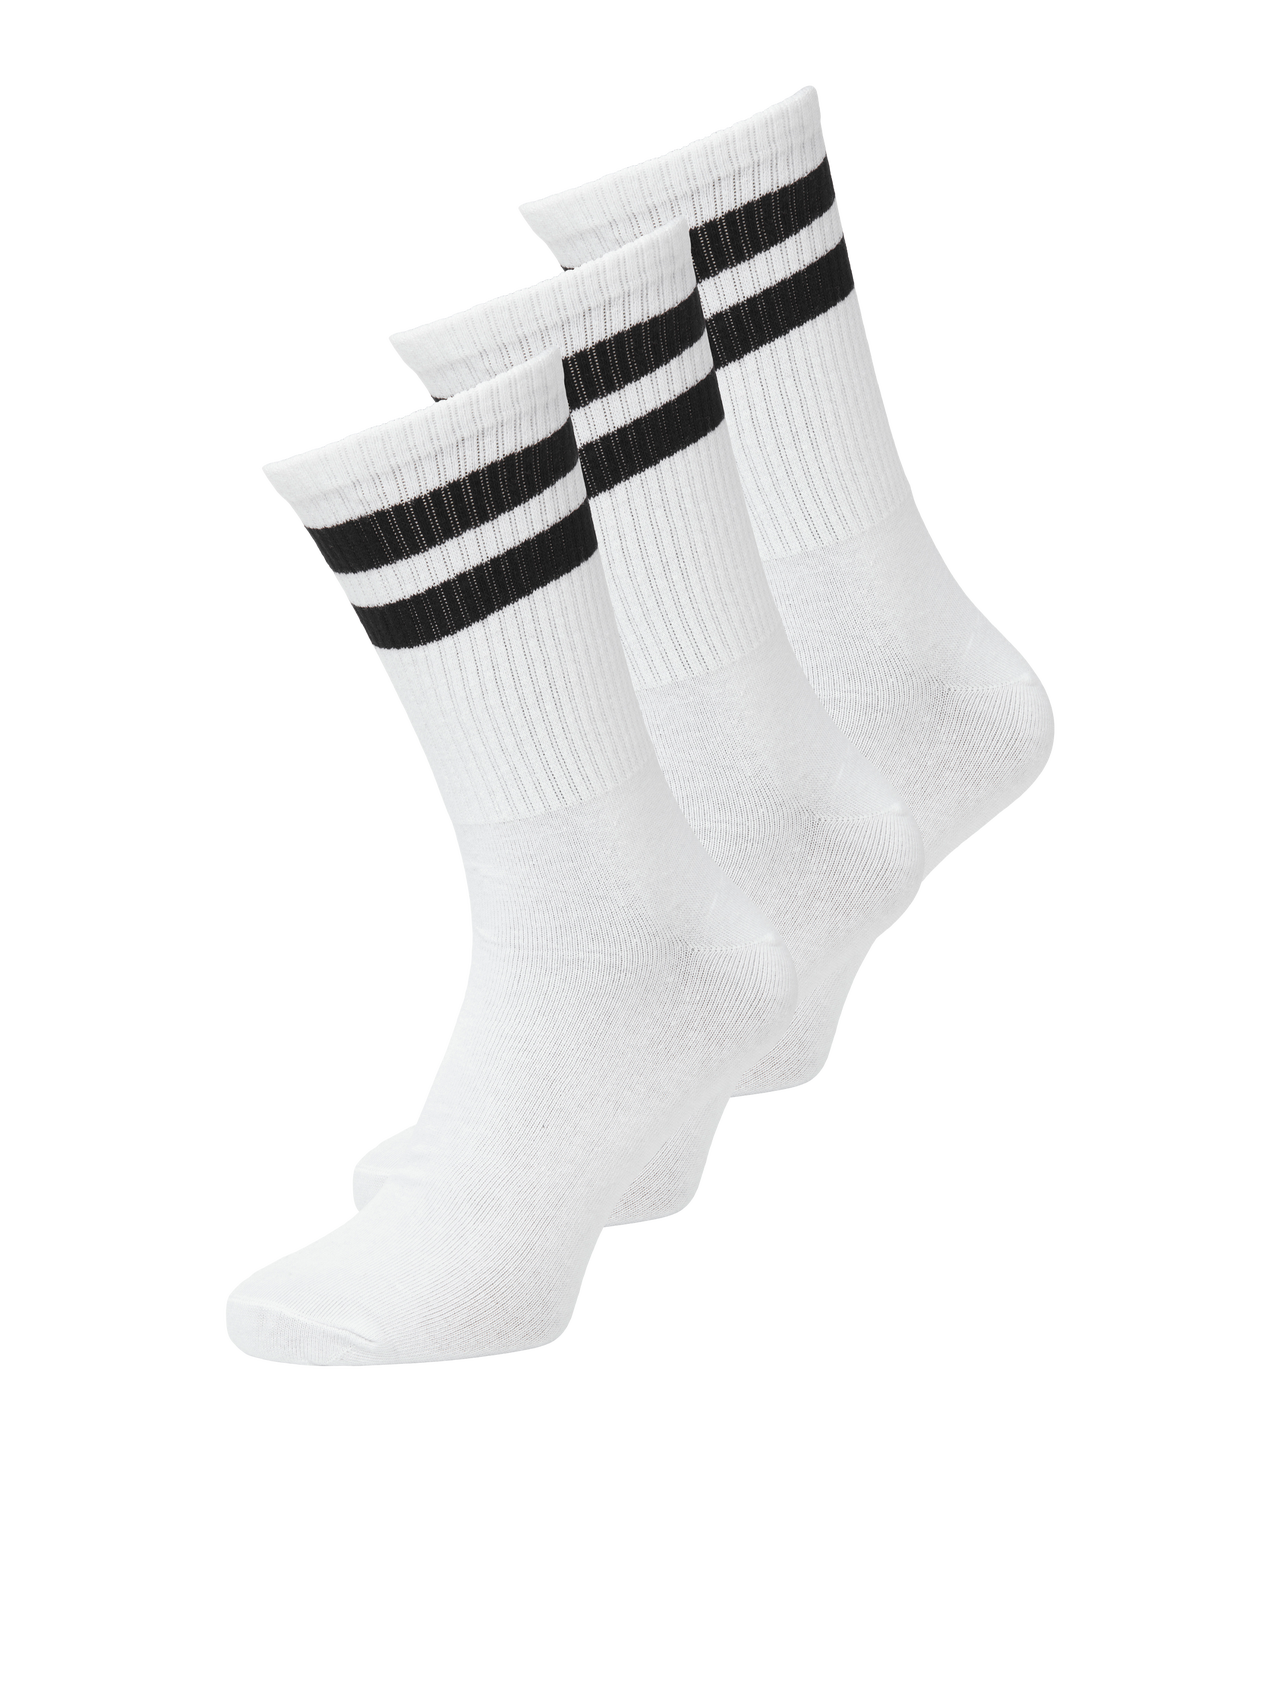 Jack & Jones 3-pack Socks -White - 12260082